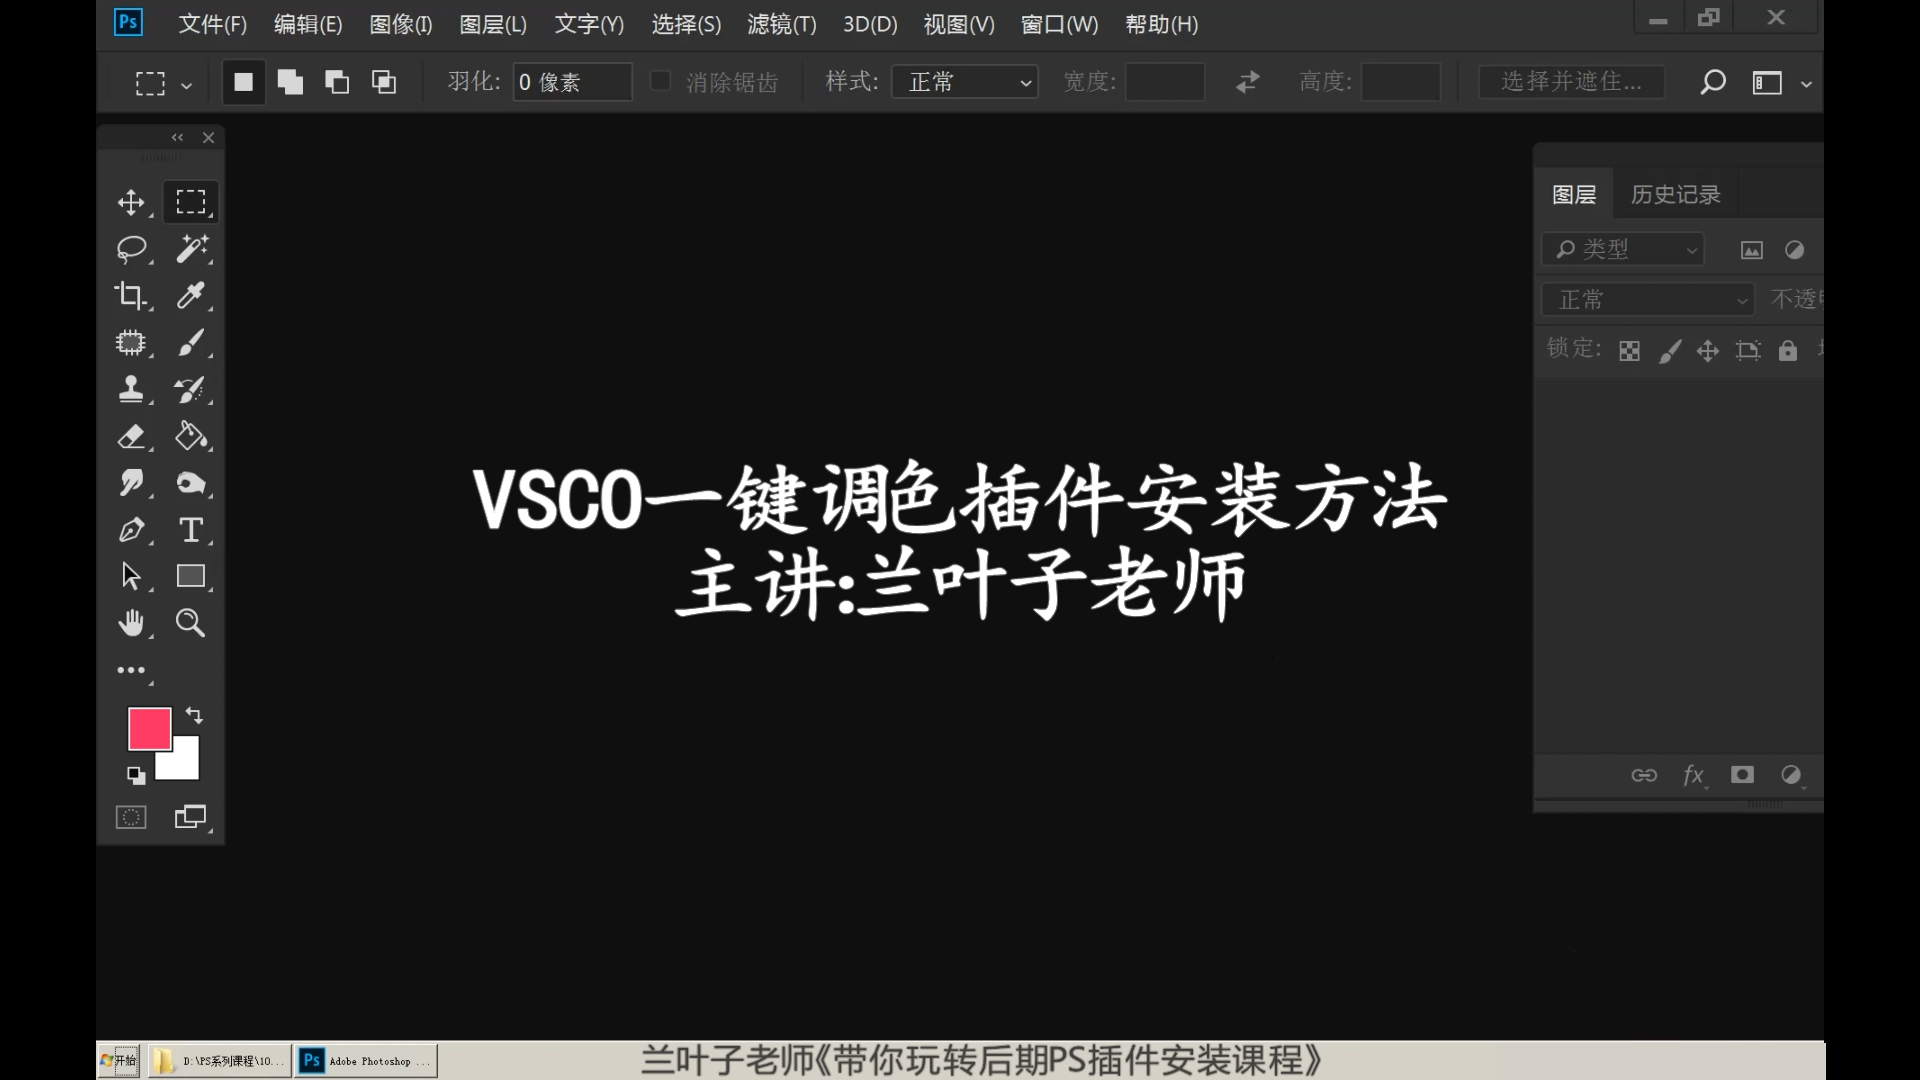 VSCO安装正式版ok[00_00_04][20200331-180742].png